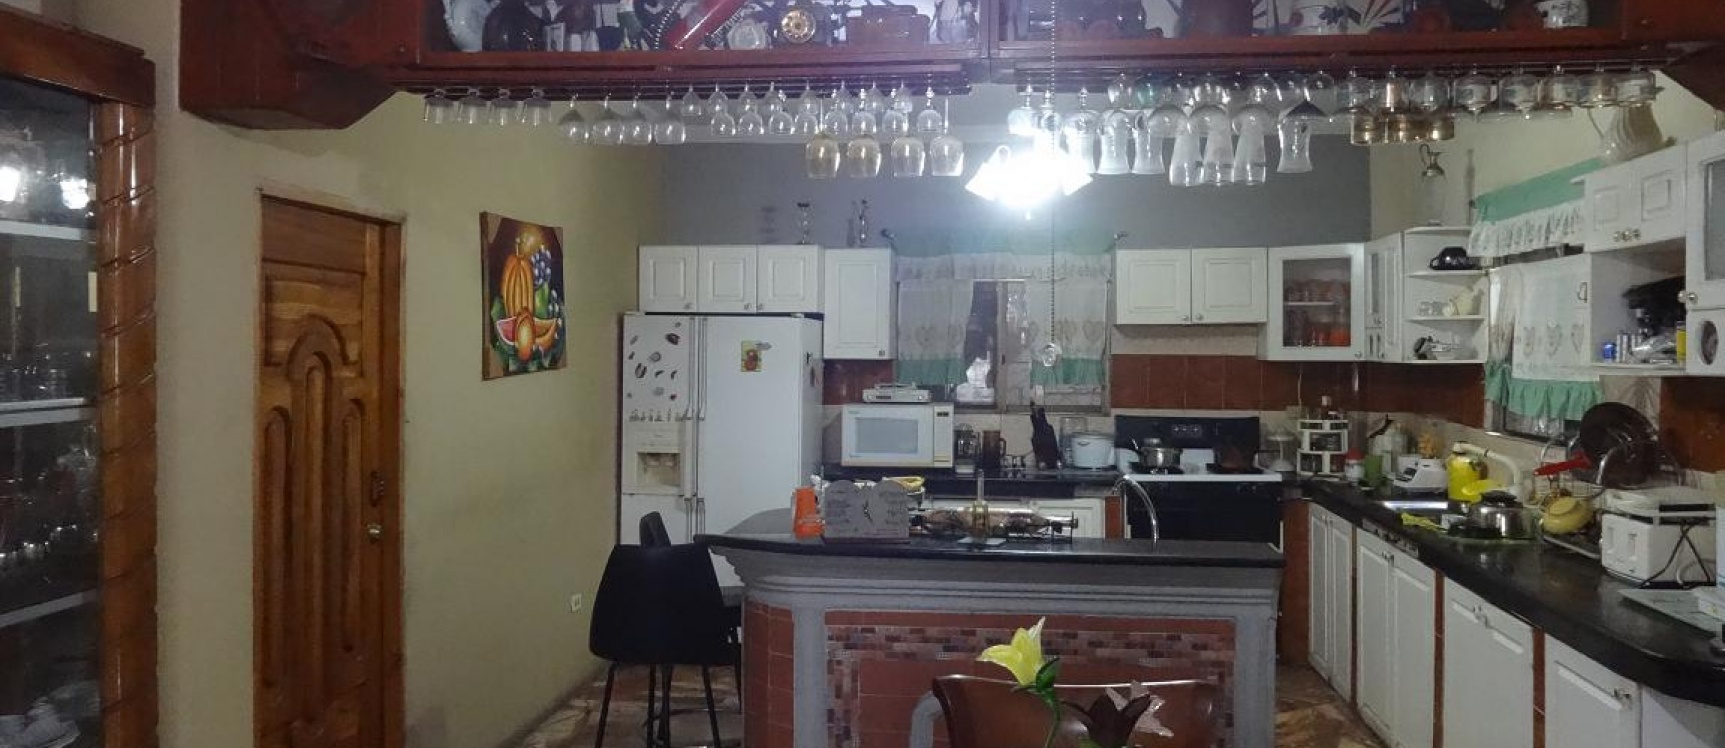 GeoBienes - Cdla. Simon Bolivar, Vendo casa rentera cerca de Aeropuerto y Mall Del Sol - Plusvalia Guayaquil Casas de venta y alquiler Inmobiliaria Ecuador